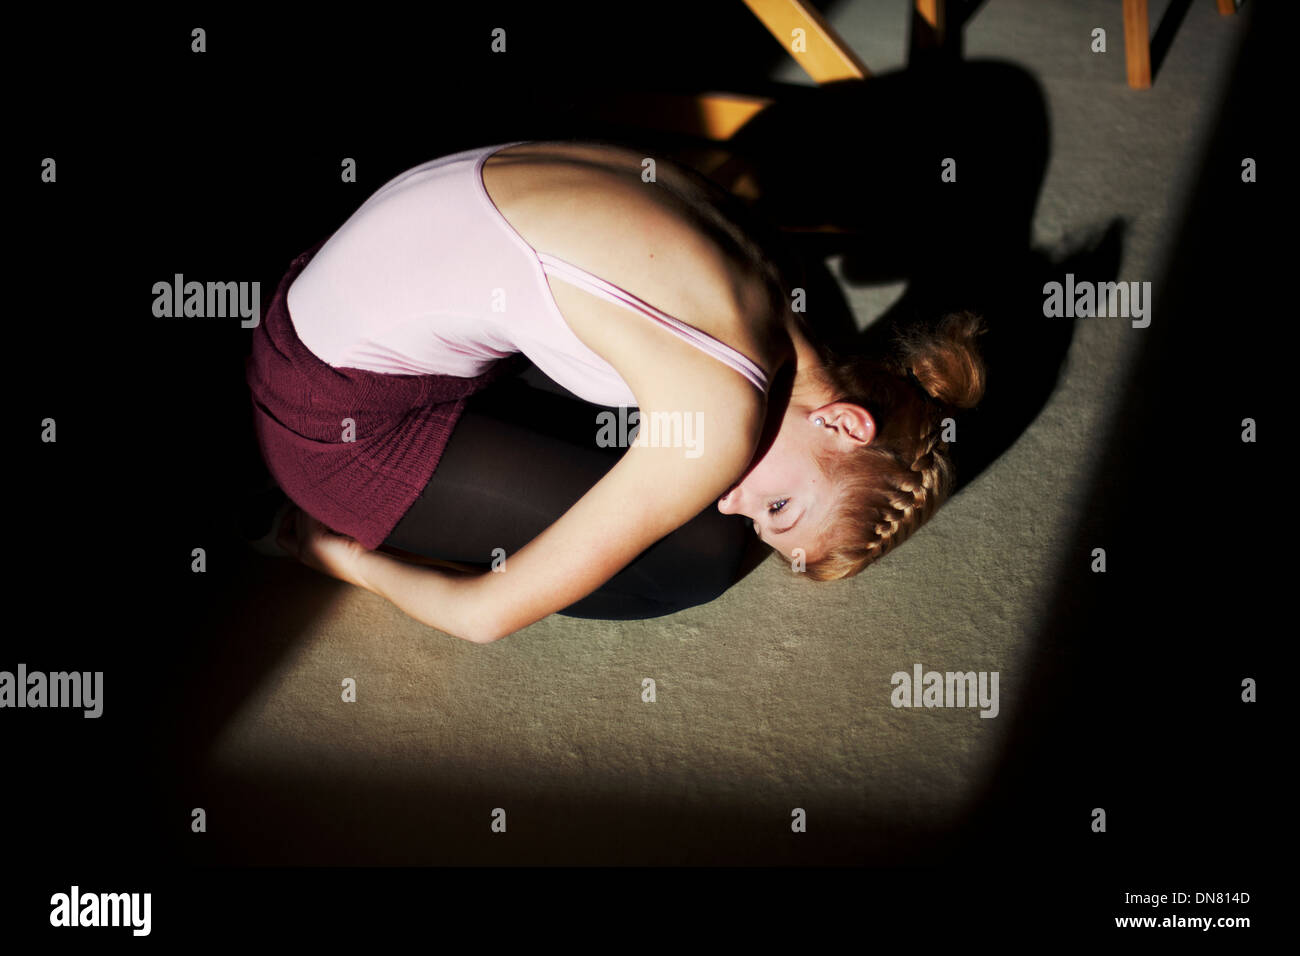 Jeune femme à genoux sur le sol, portrait Banque D'Images